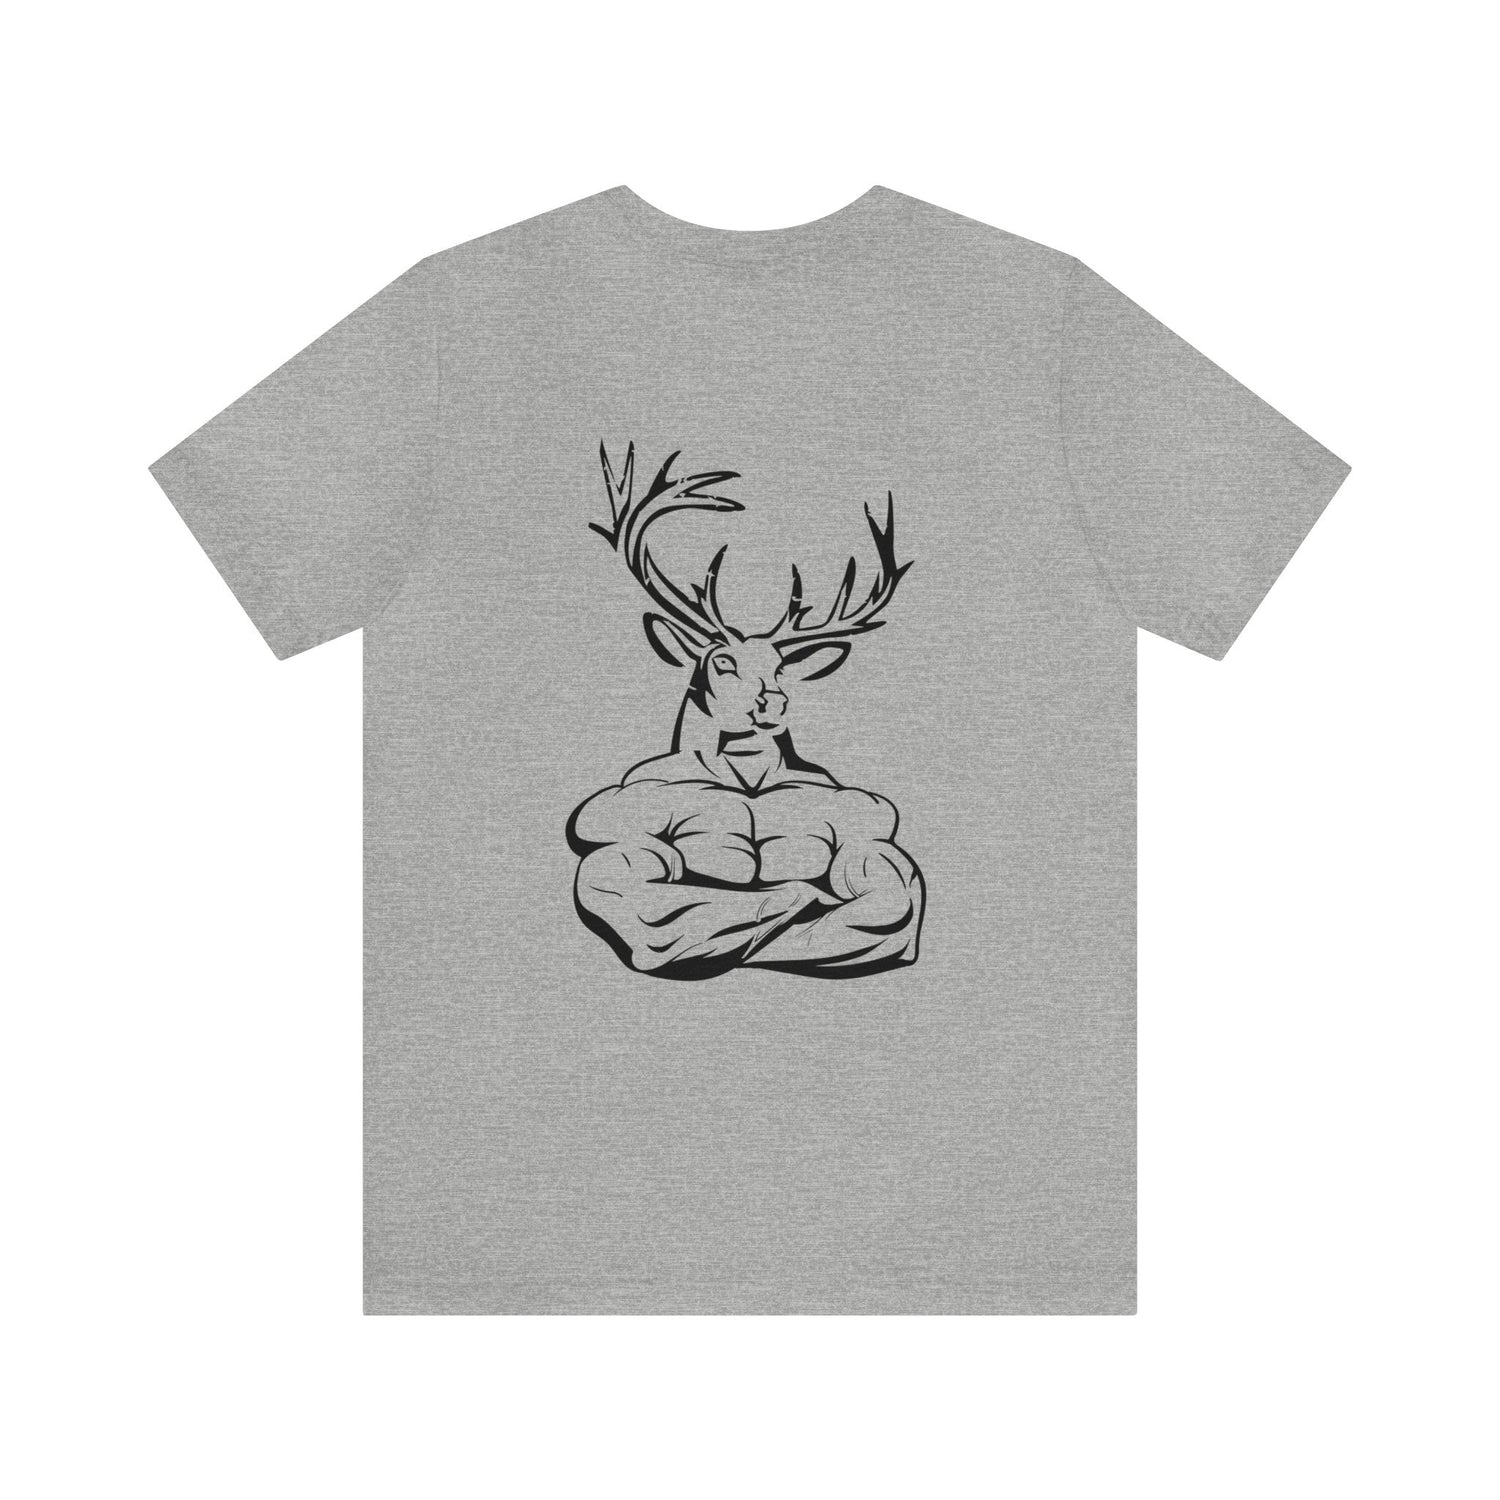 Western deer hunting t-shirt, color light grey, back design placement